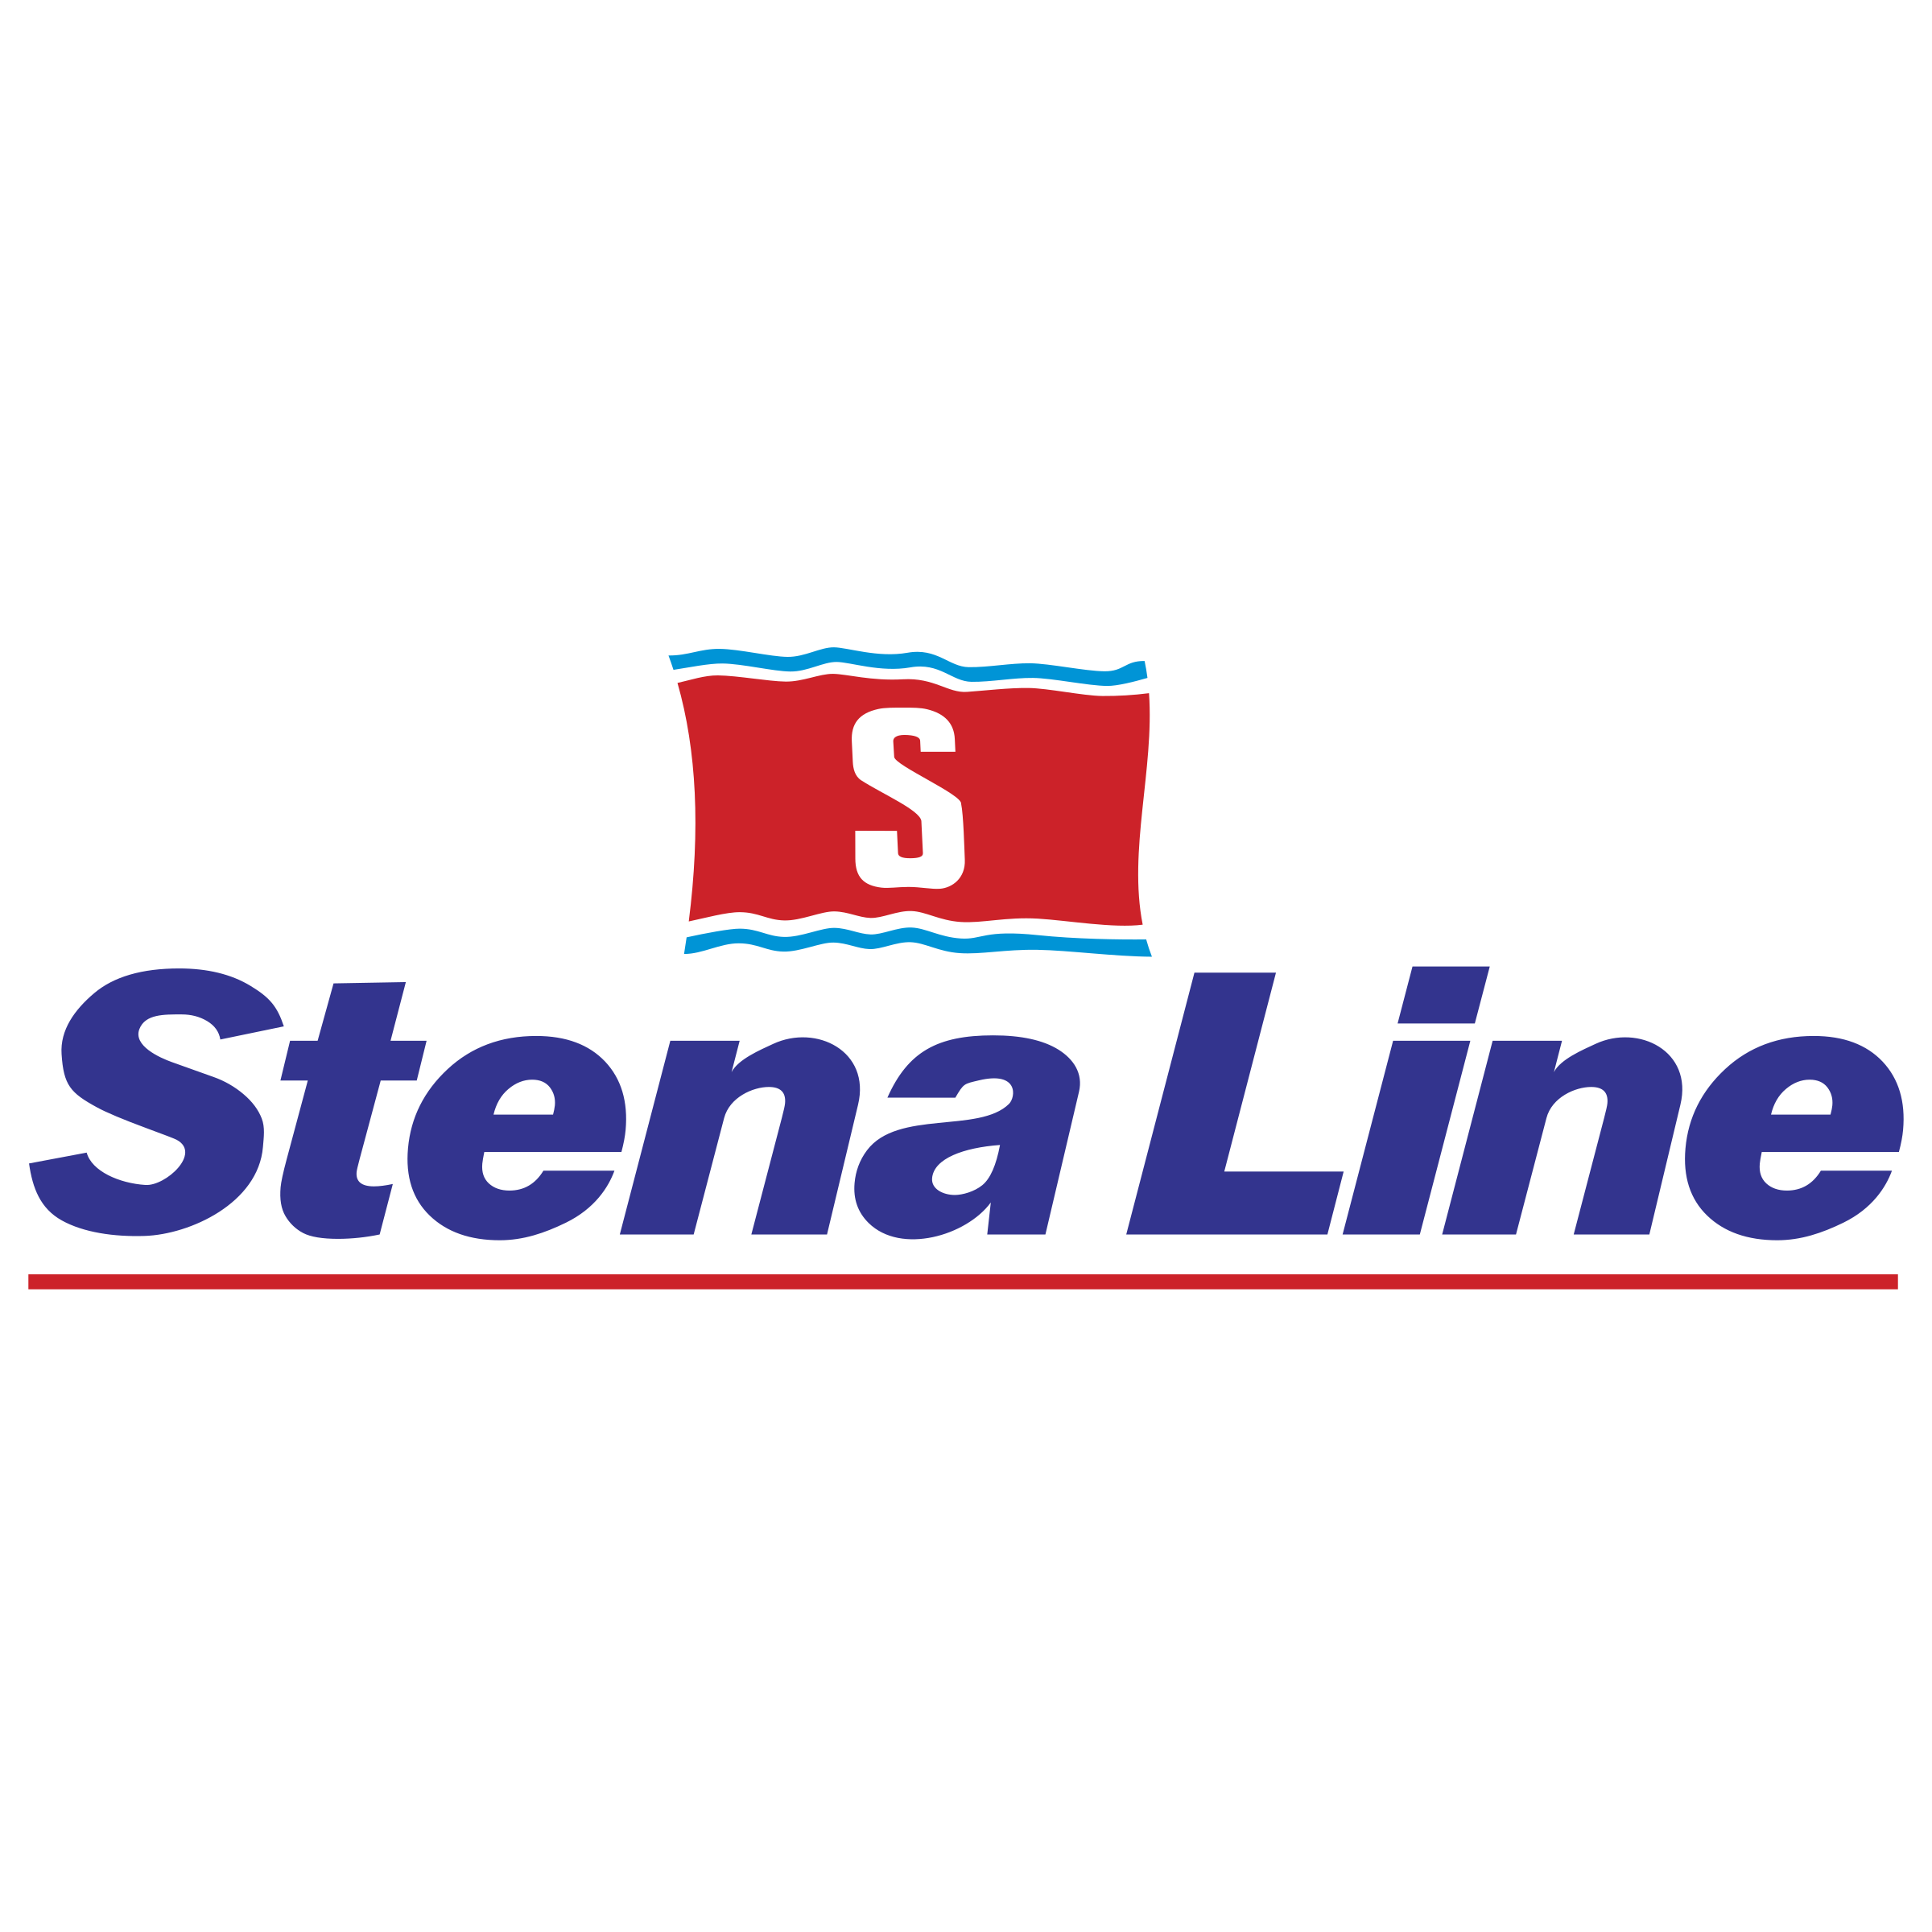 stena-line-logo-png-transparent.png